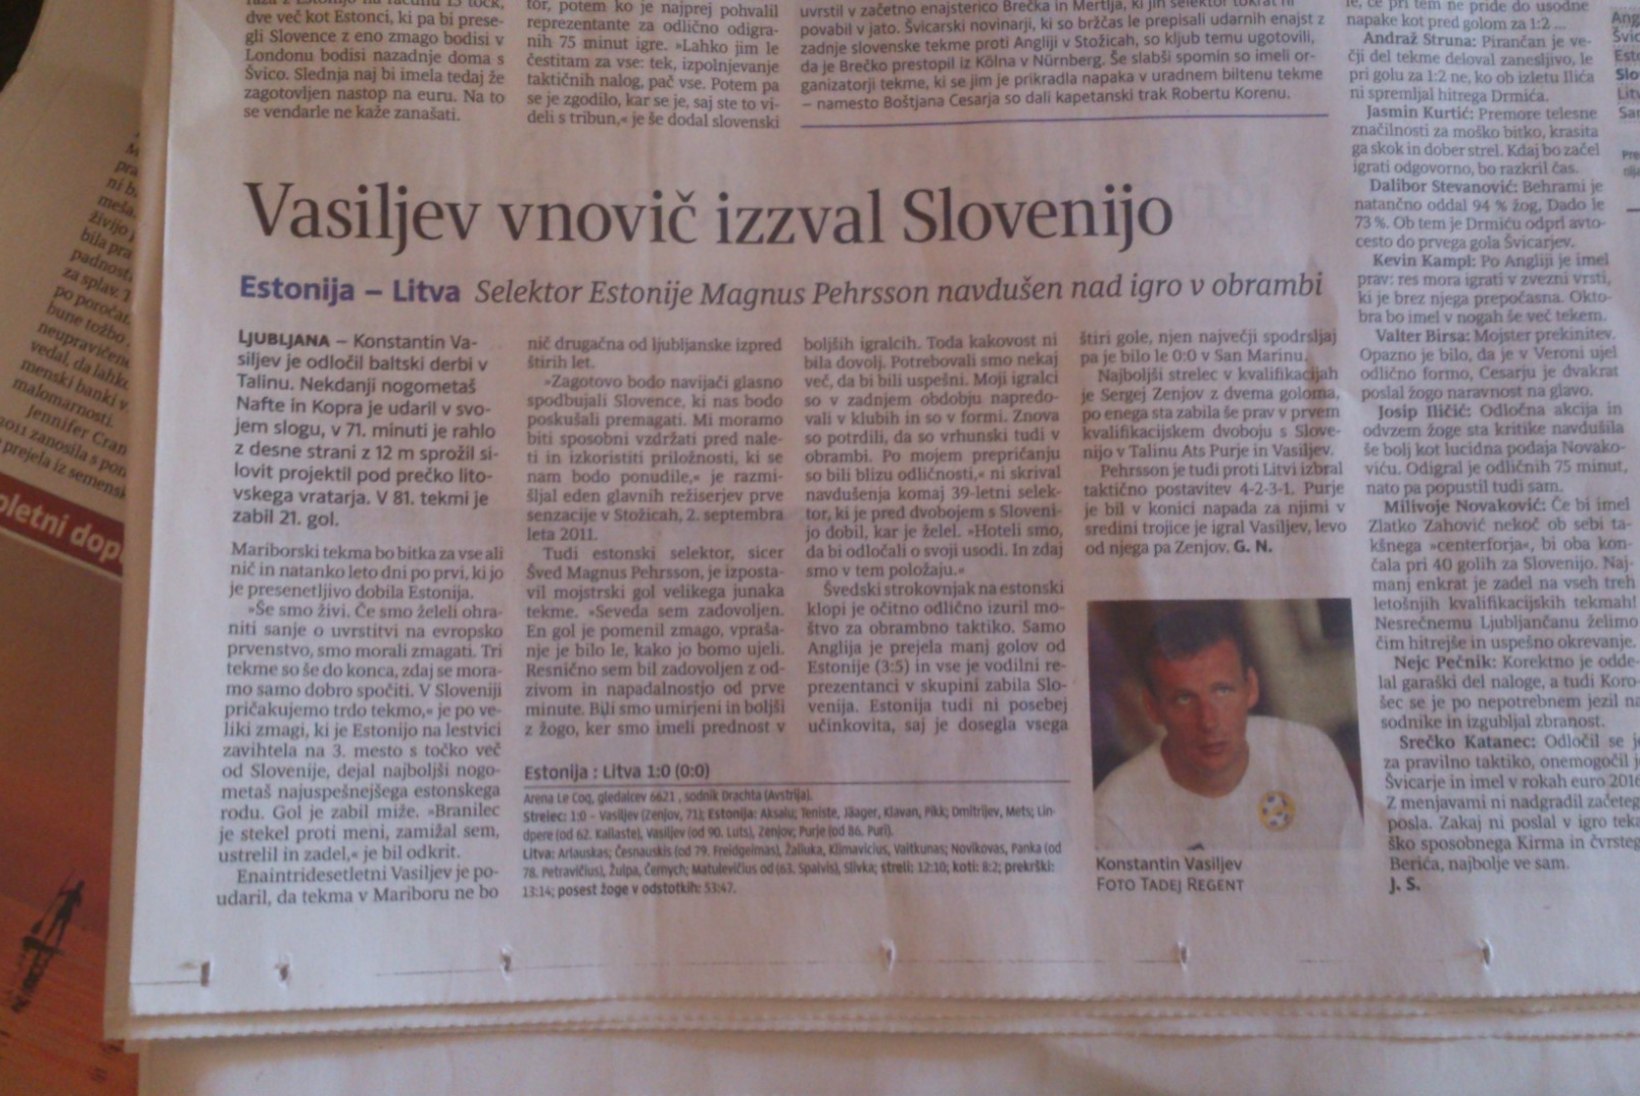 Sloveenia ajaleht pühendas Vassiljevile eraldi artikli 